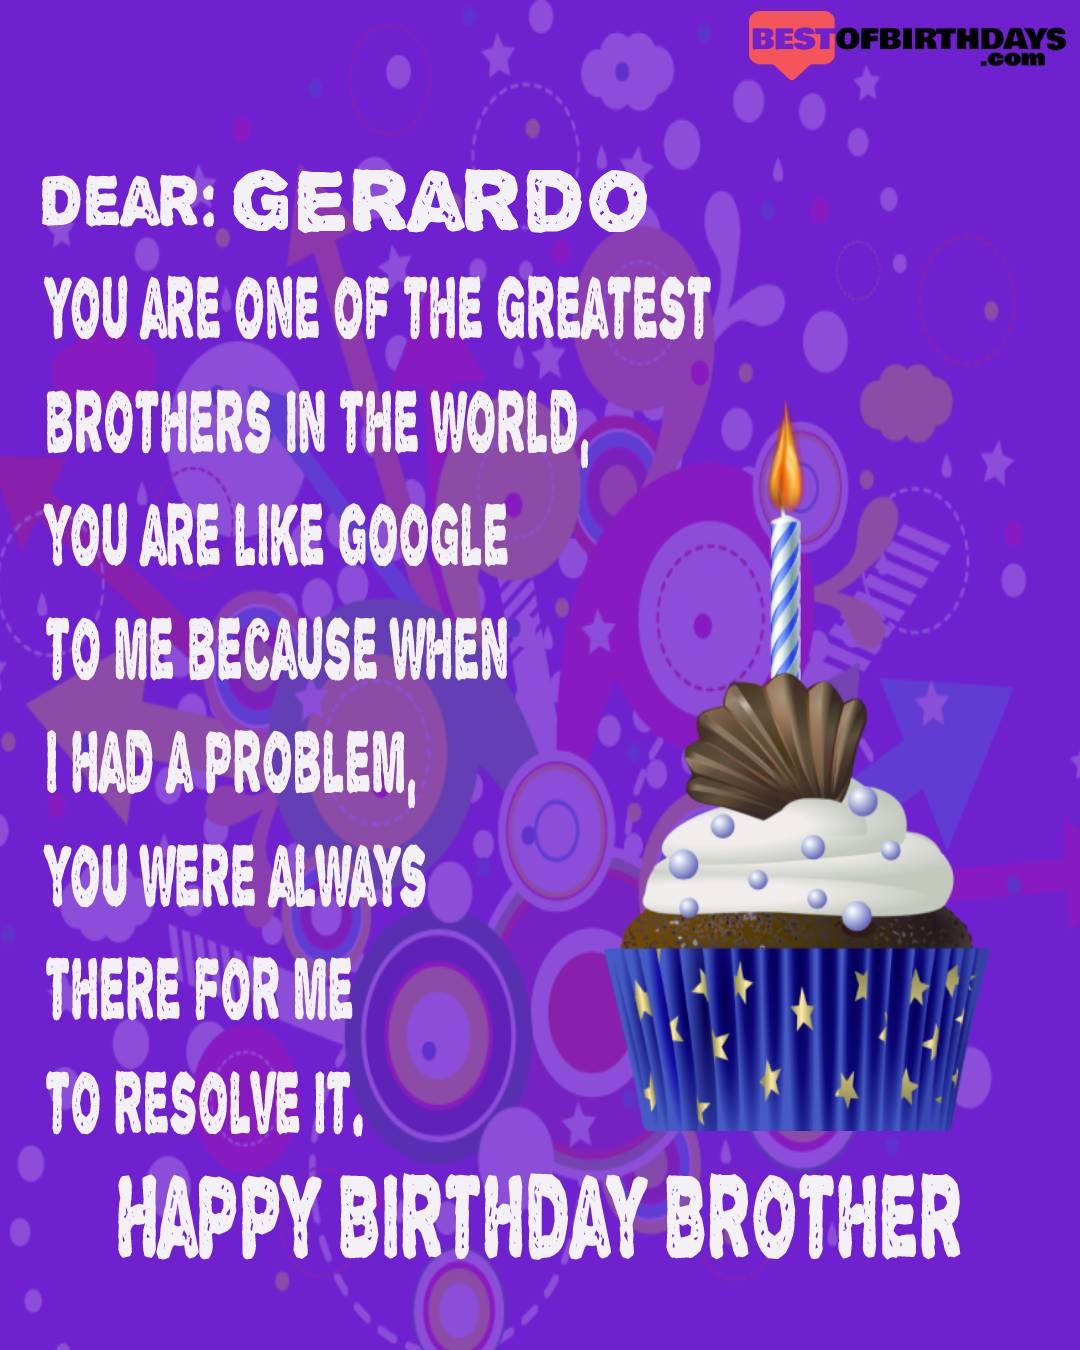 Happy birthday gerardo bhai brother bro